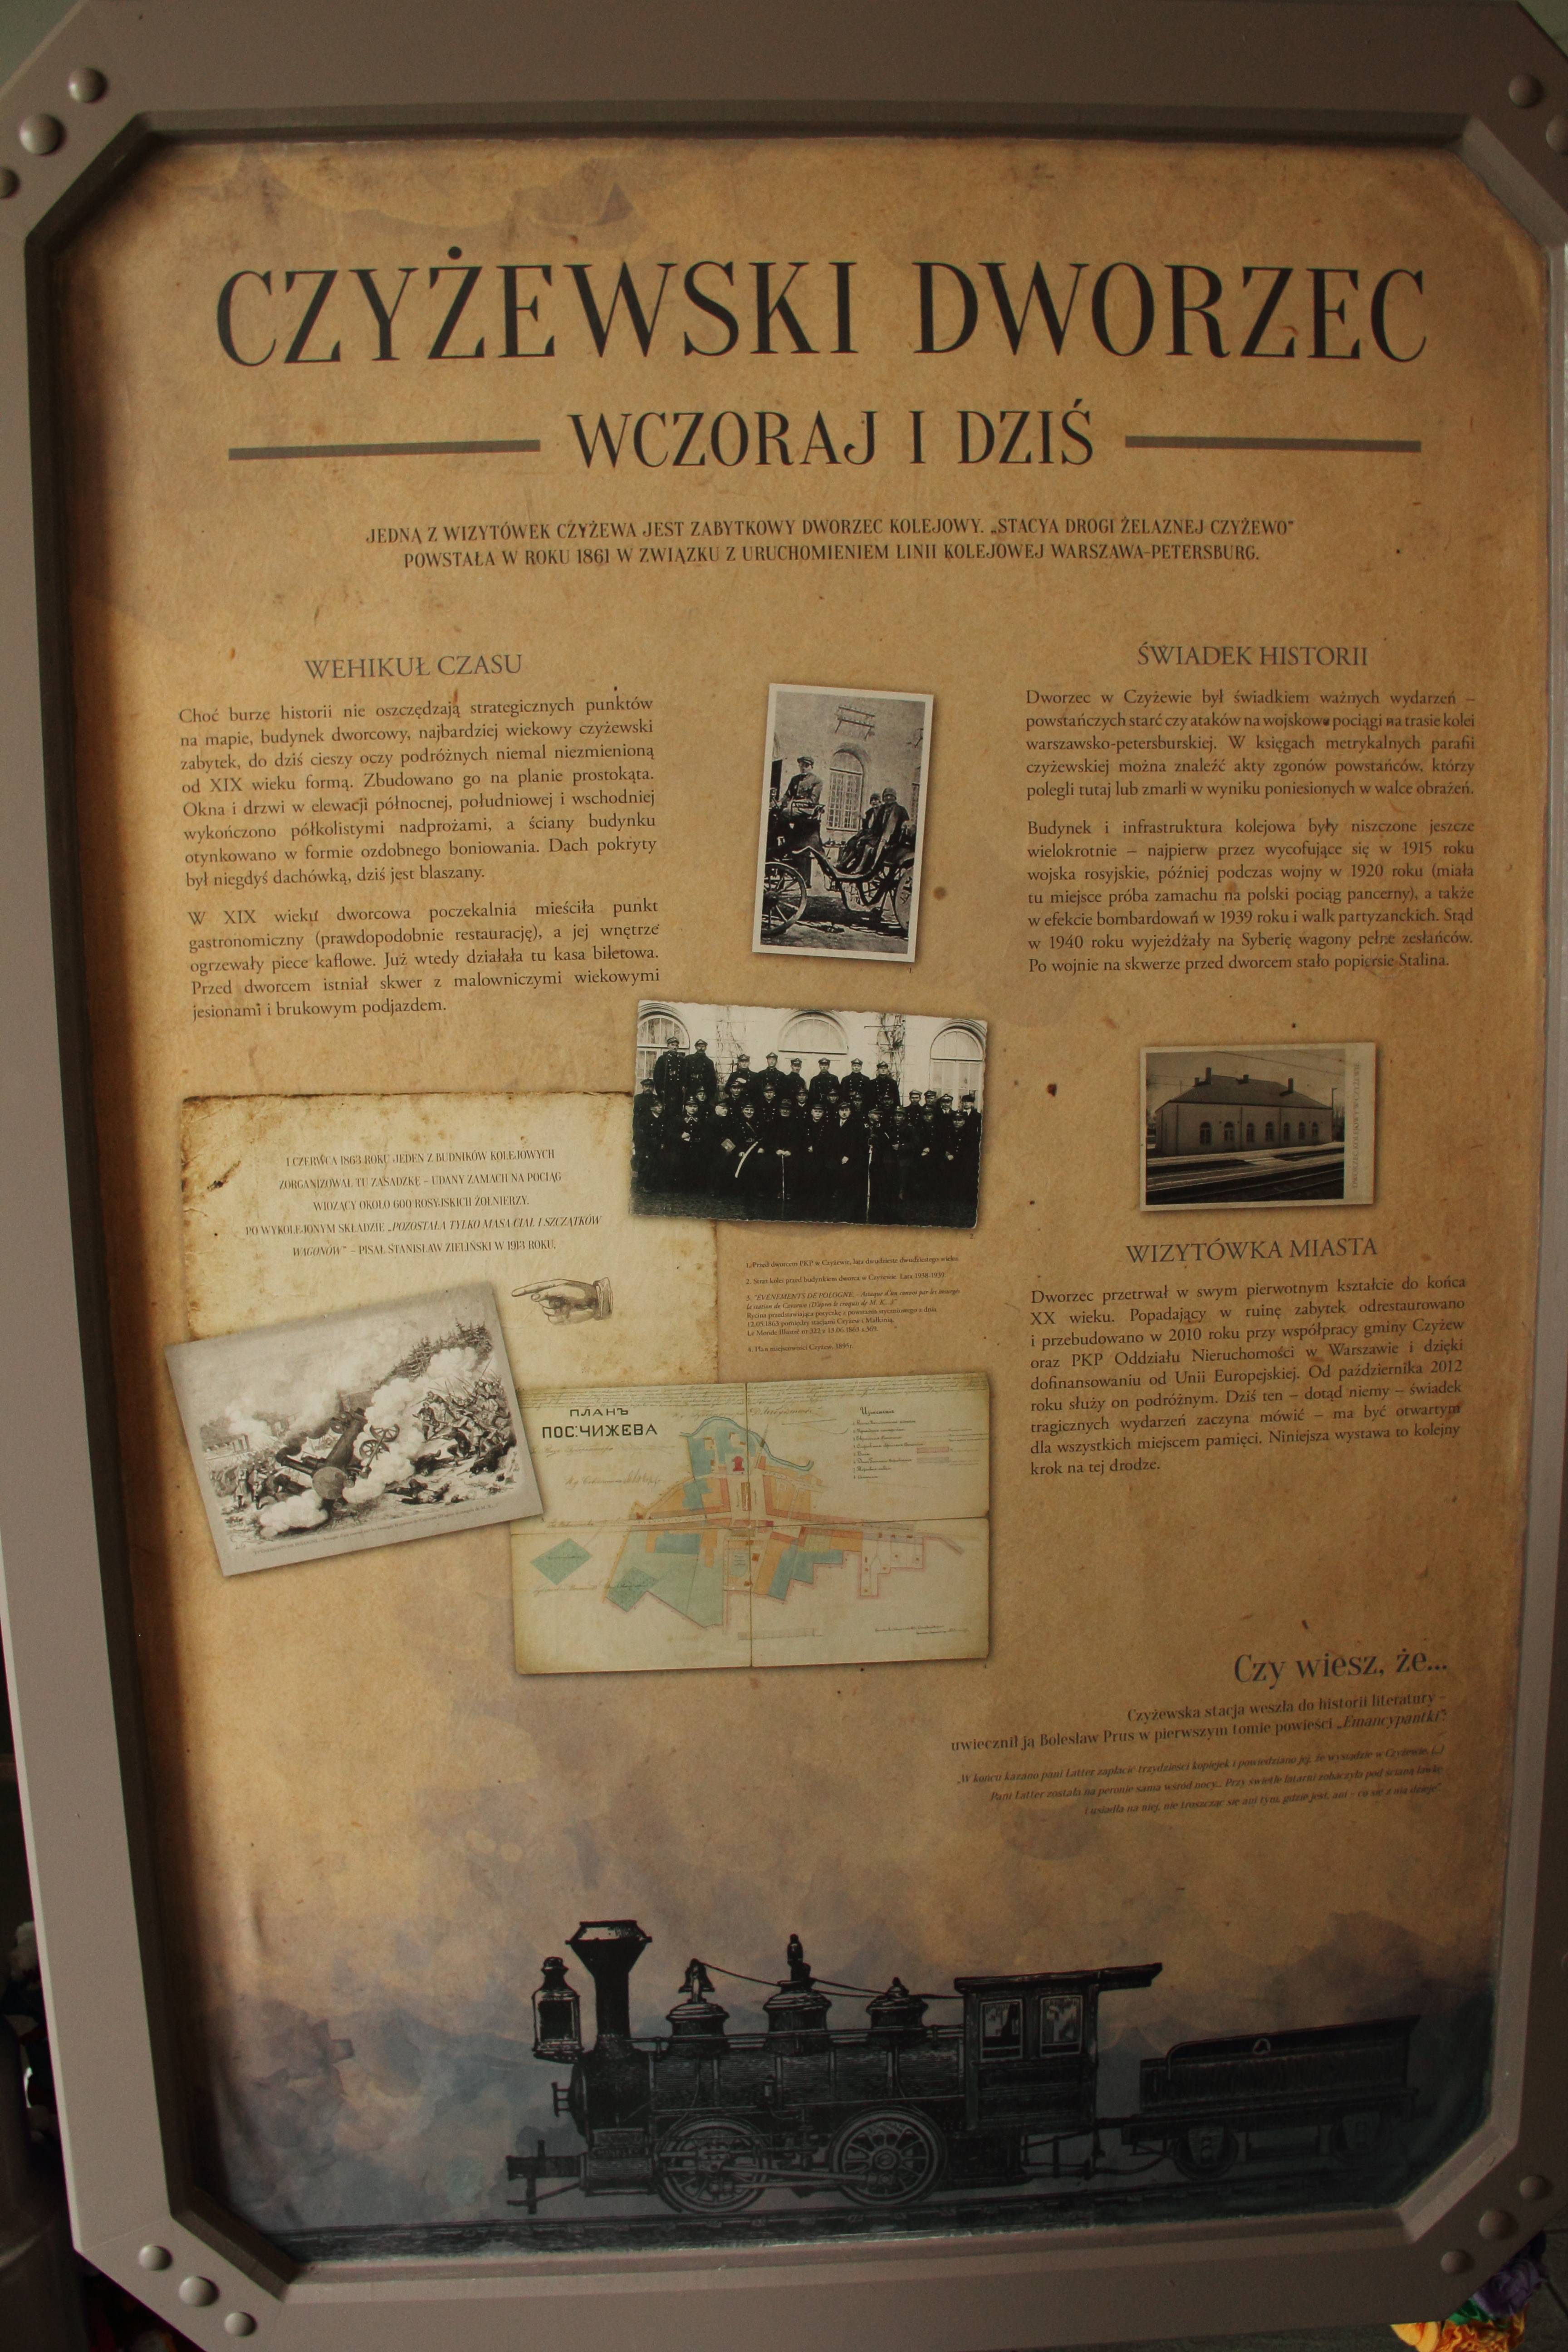 Czyżewski Dworzec - wczoraj i dziś